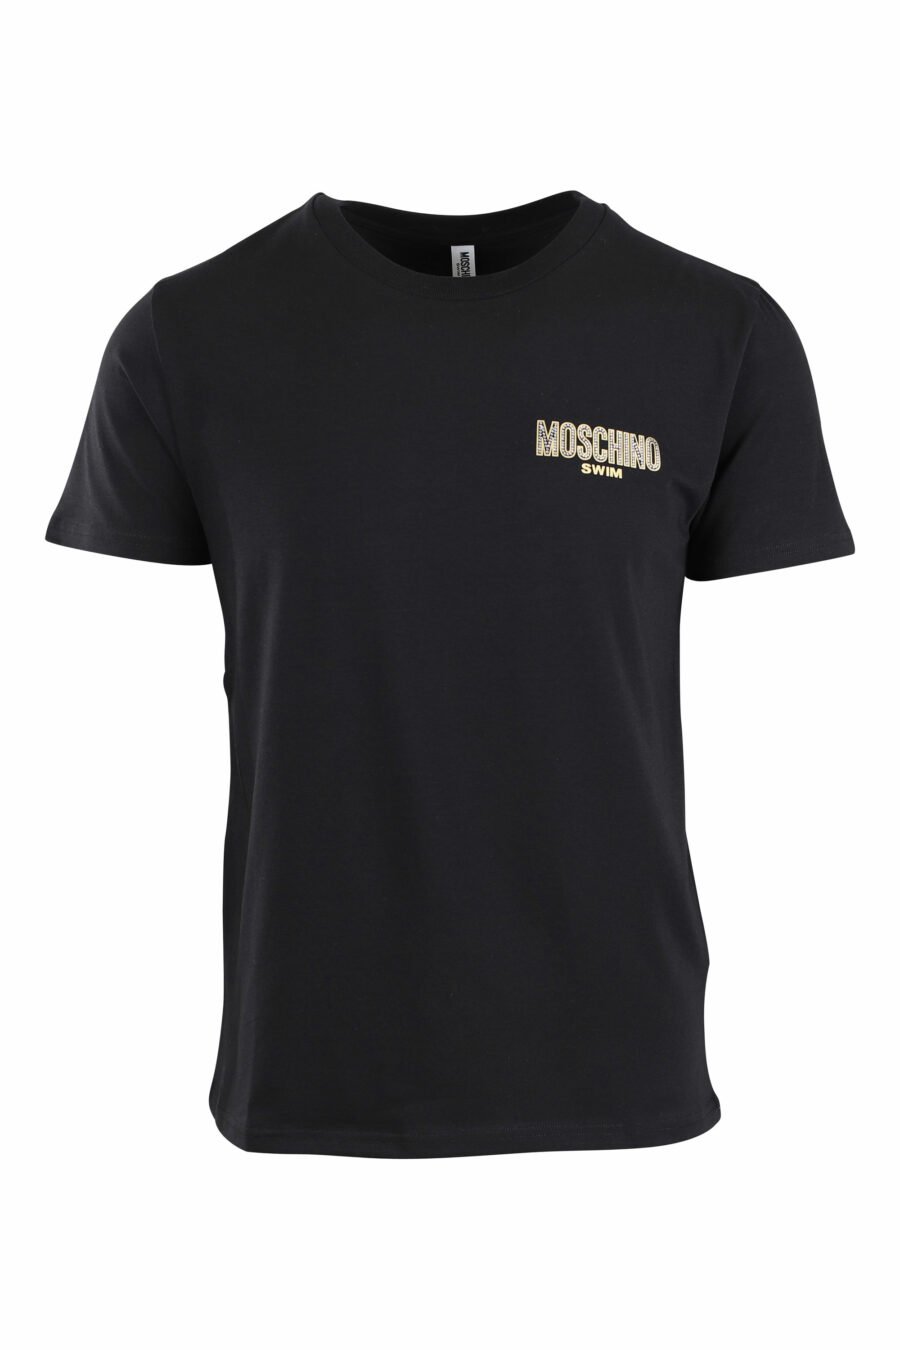 Camiseta negra con logo pequeño dorado con strass - IMG 2654